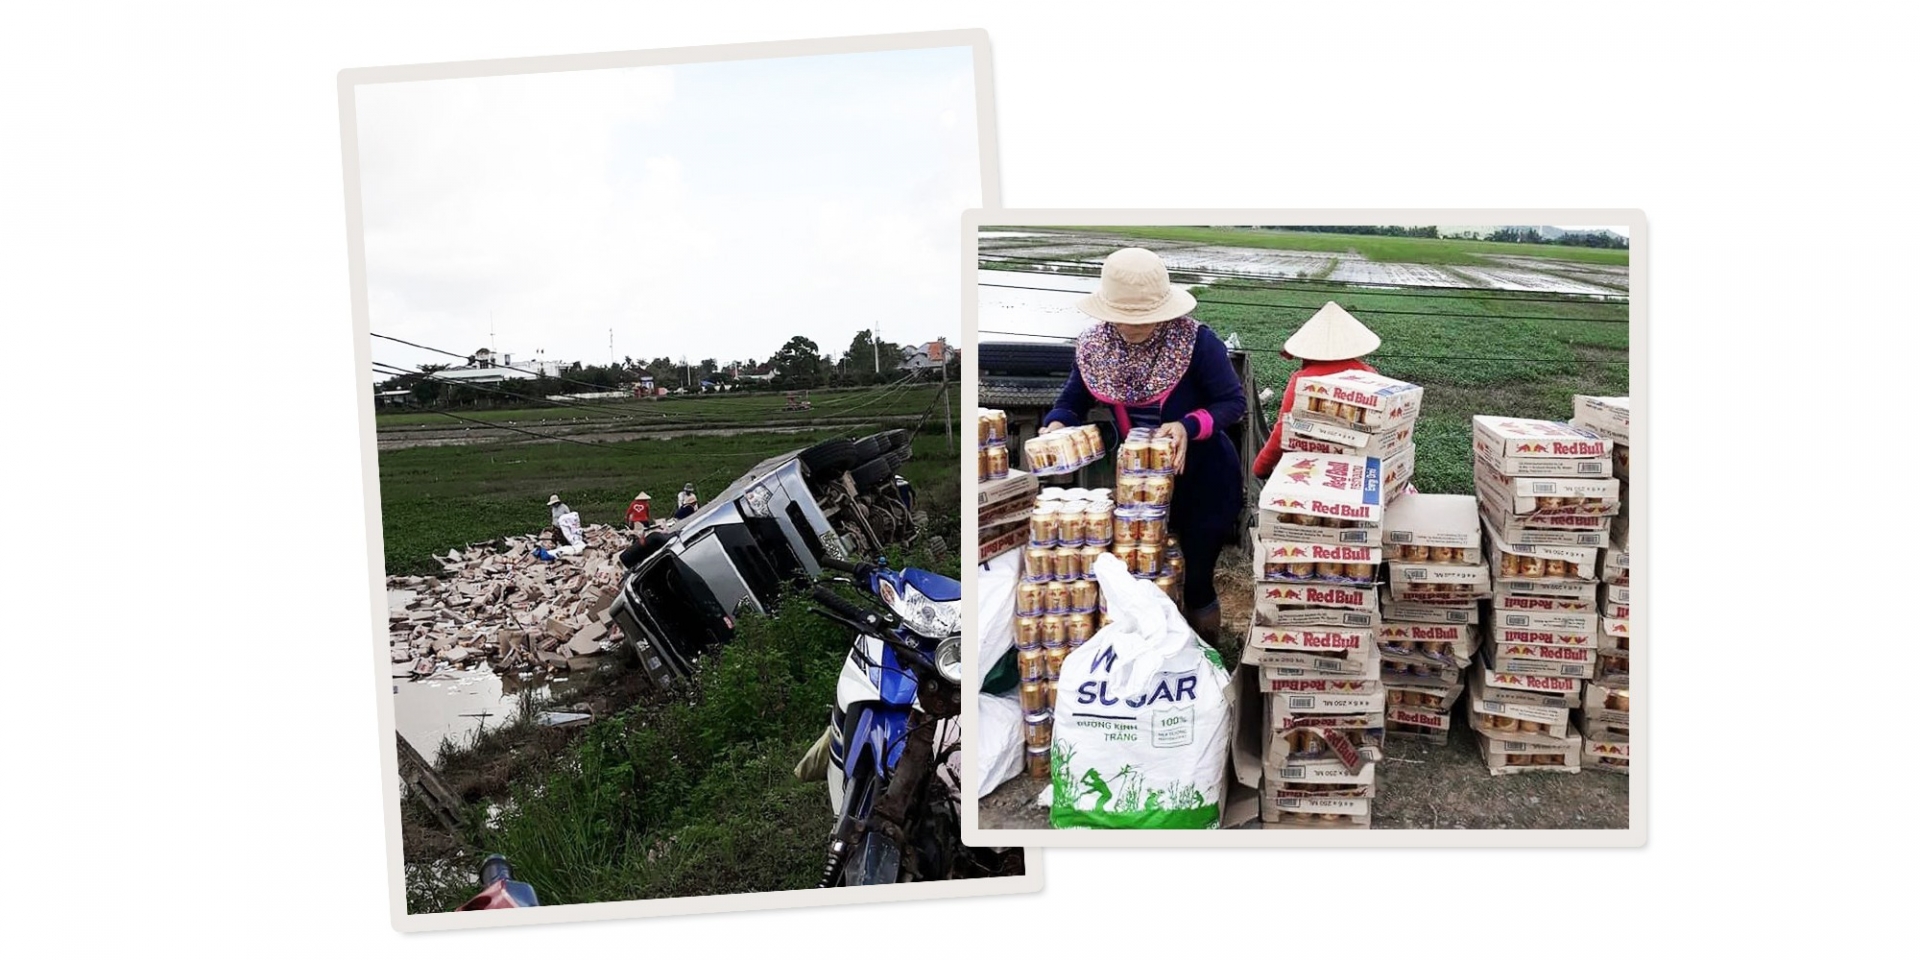 Người dân giúp gom hàng hóa từ xe tải bị lật tại quốc lộ 29 qua xã Hòa Phong (Tây Hòa, Phú Yên) sáng 4-12 - Ảnh: FB THANH THUY LE